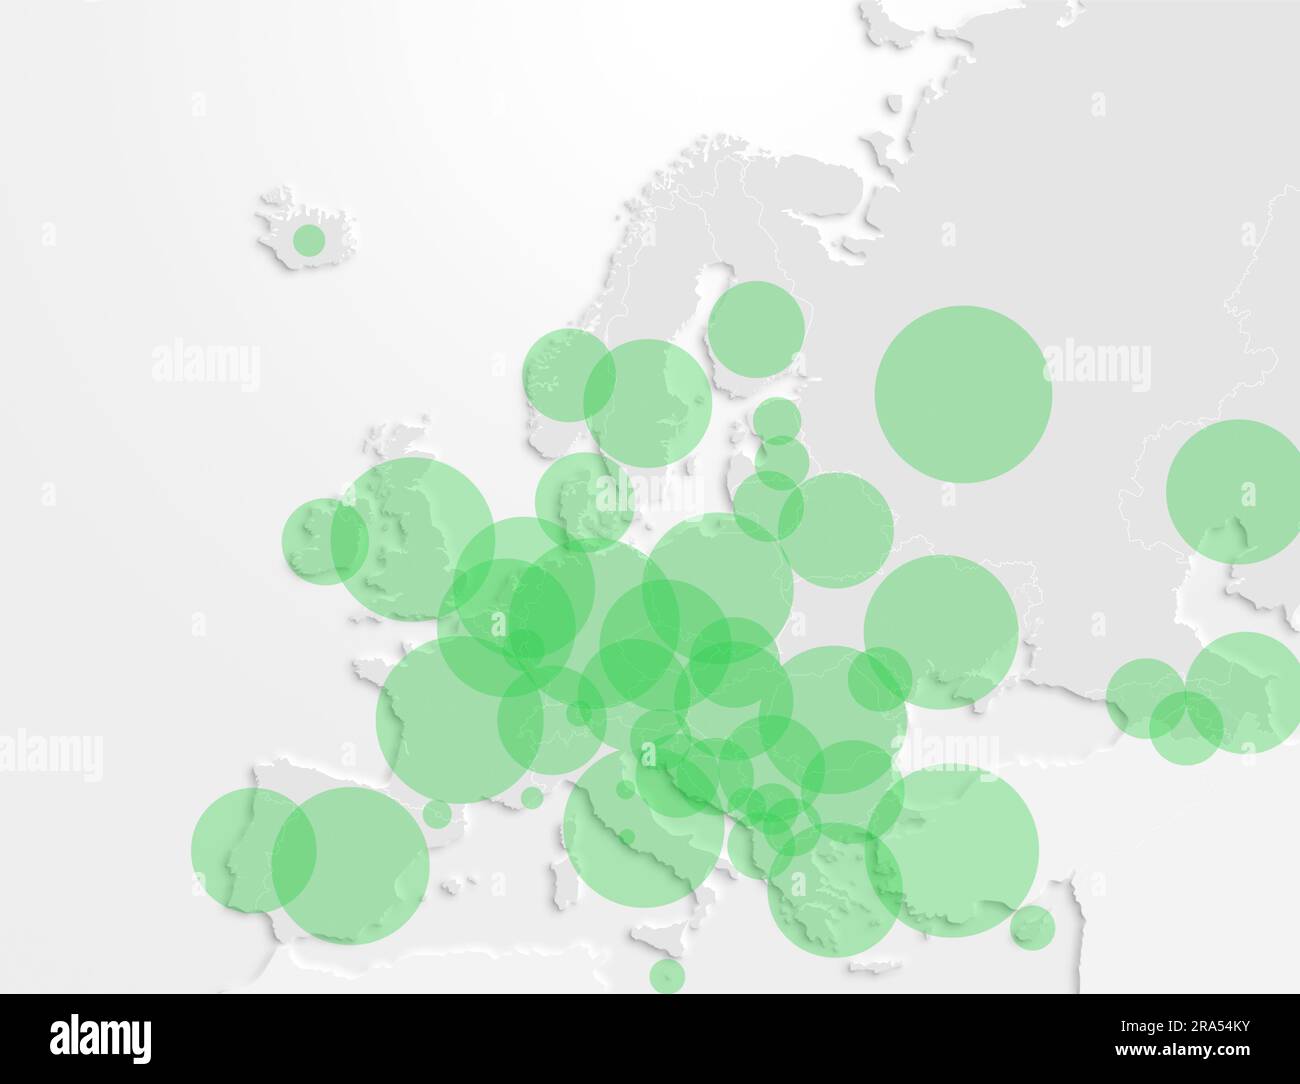 Carte du continent européen avec des cercles verts représentant la population de chaque pays. Illustration de la population dans les pays européens. Banque D'Images